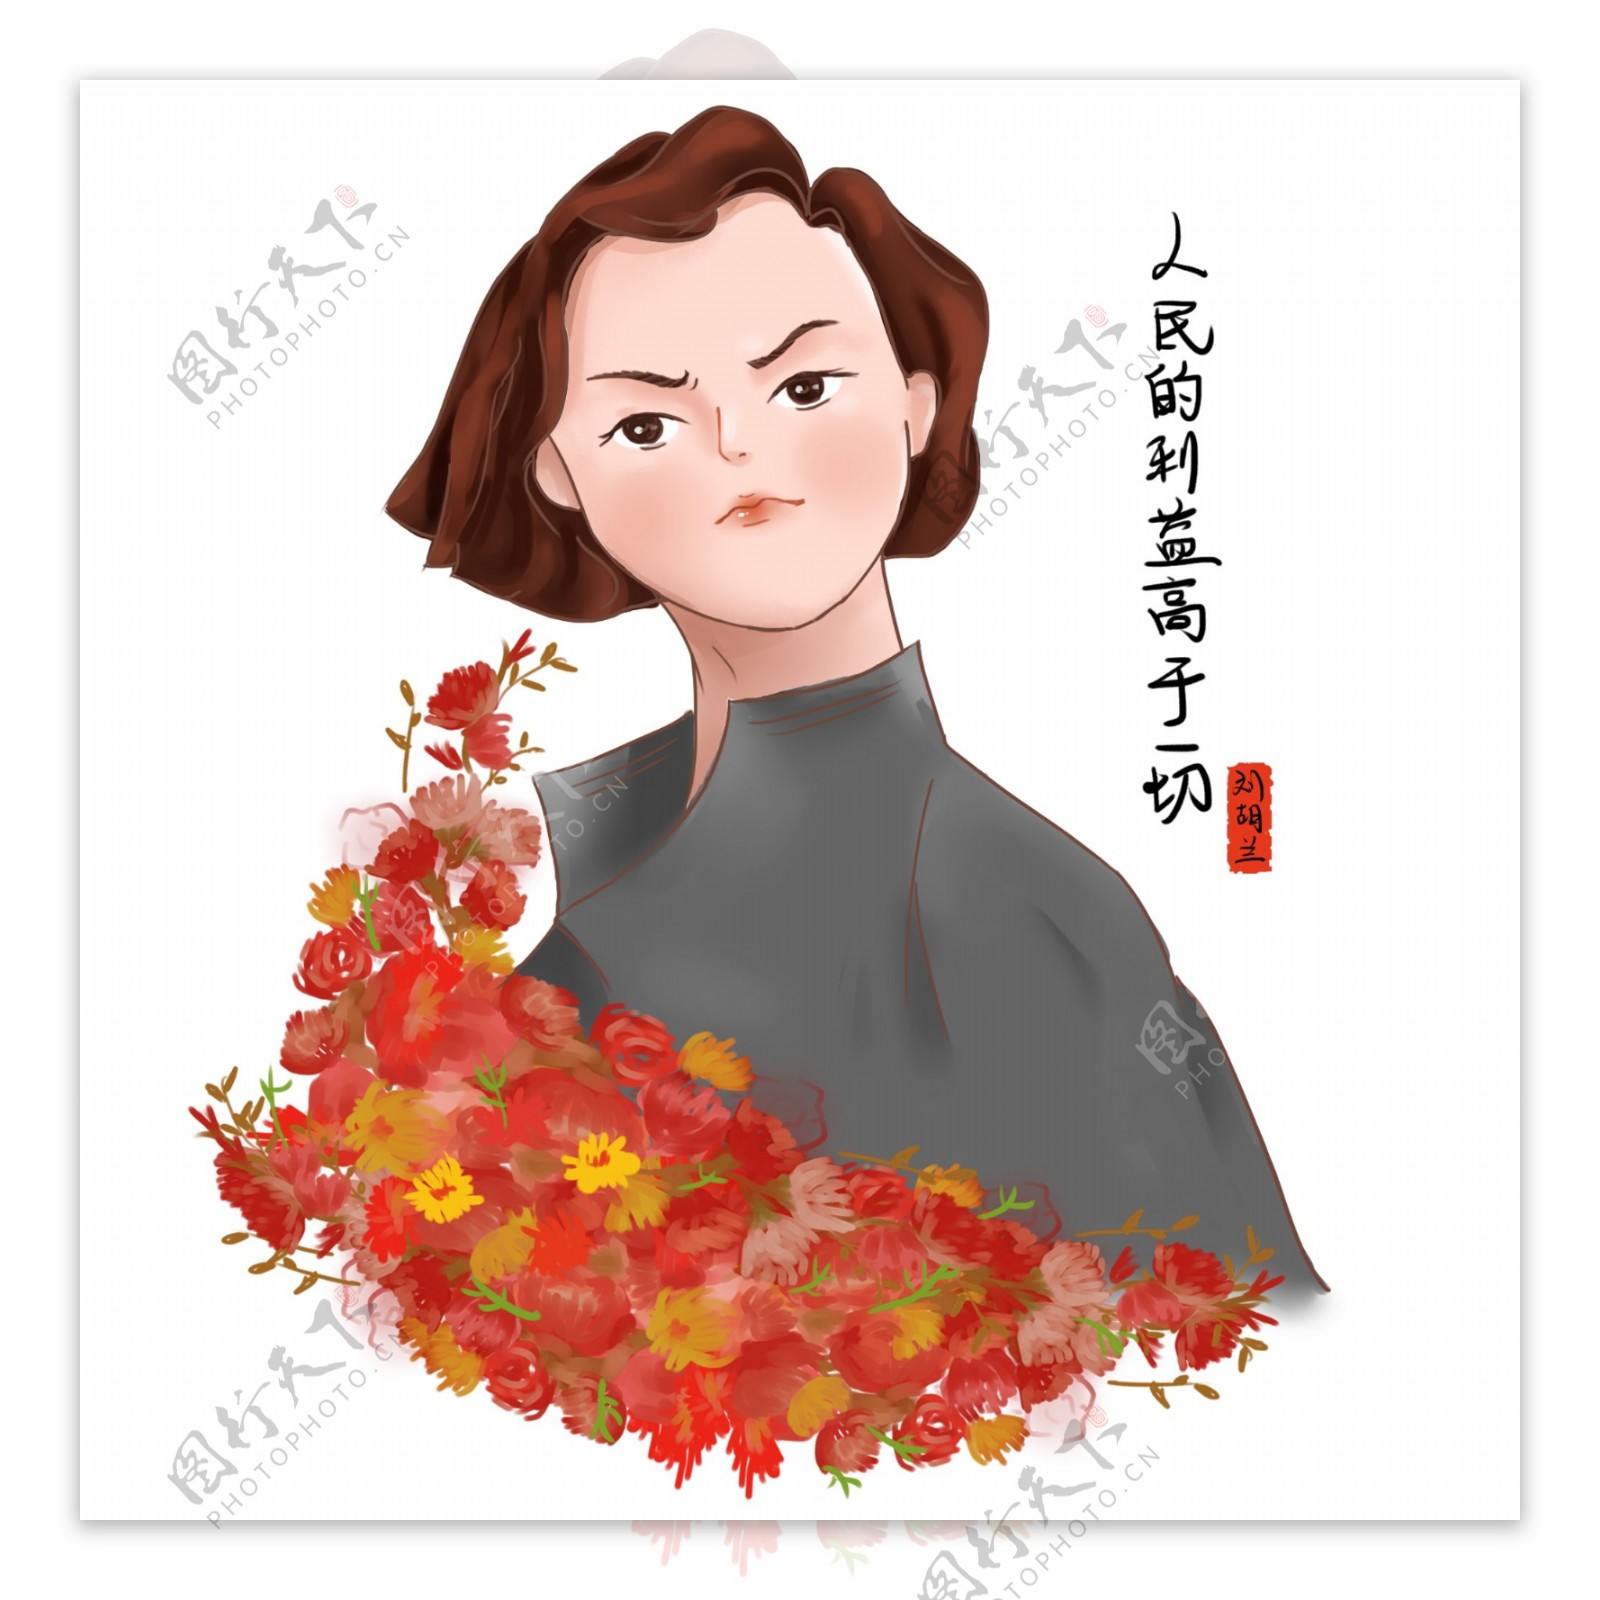 革命先烈优秀共产党员刘胡兰卡通人物肖像图